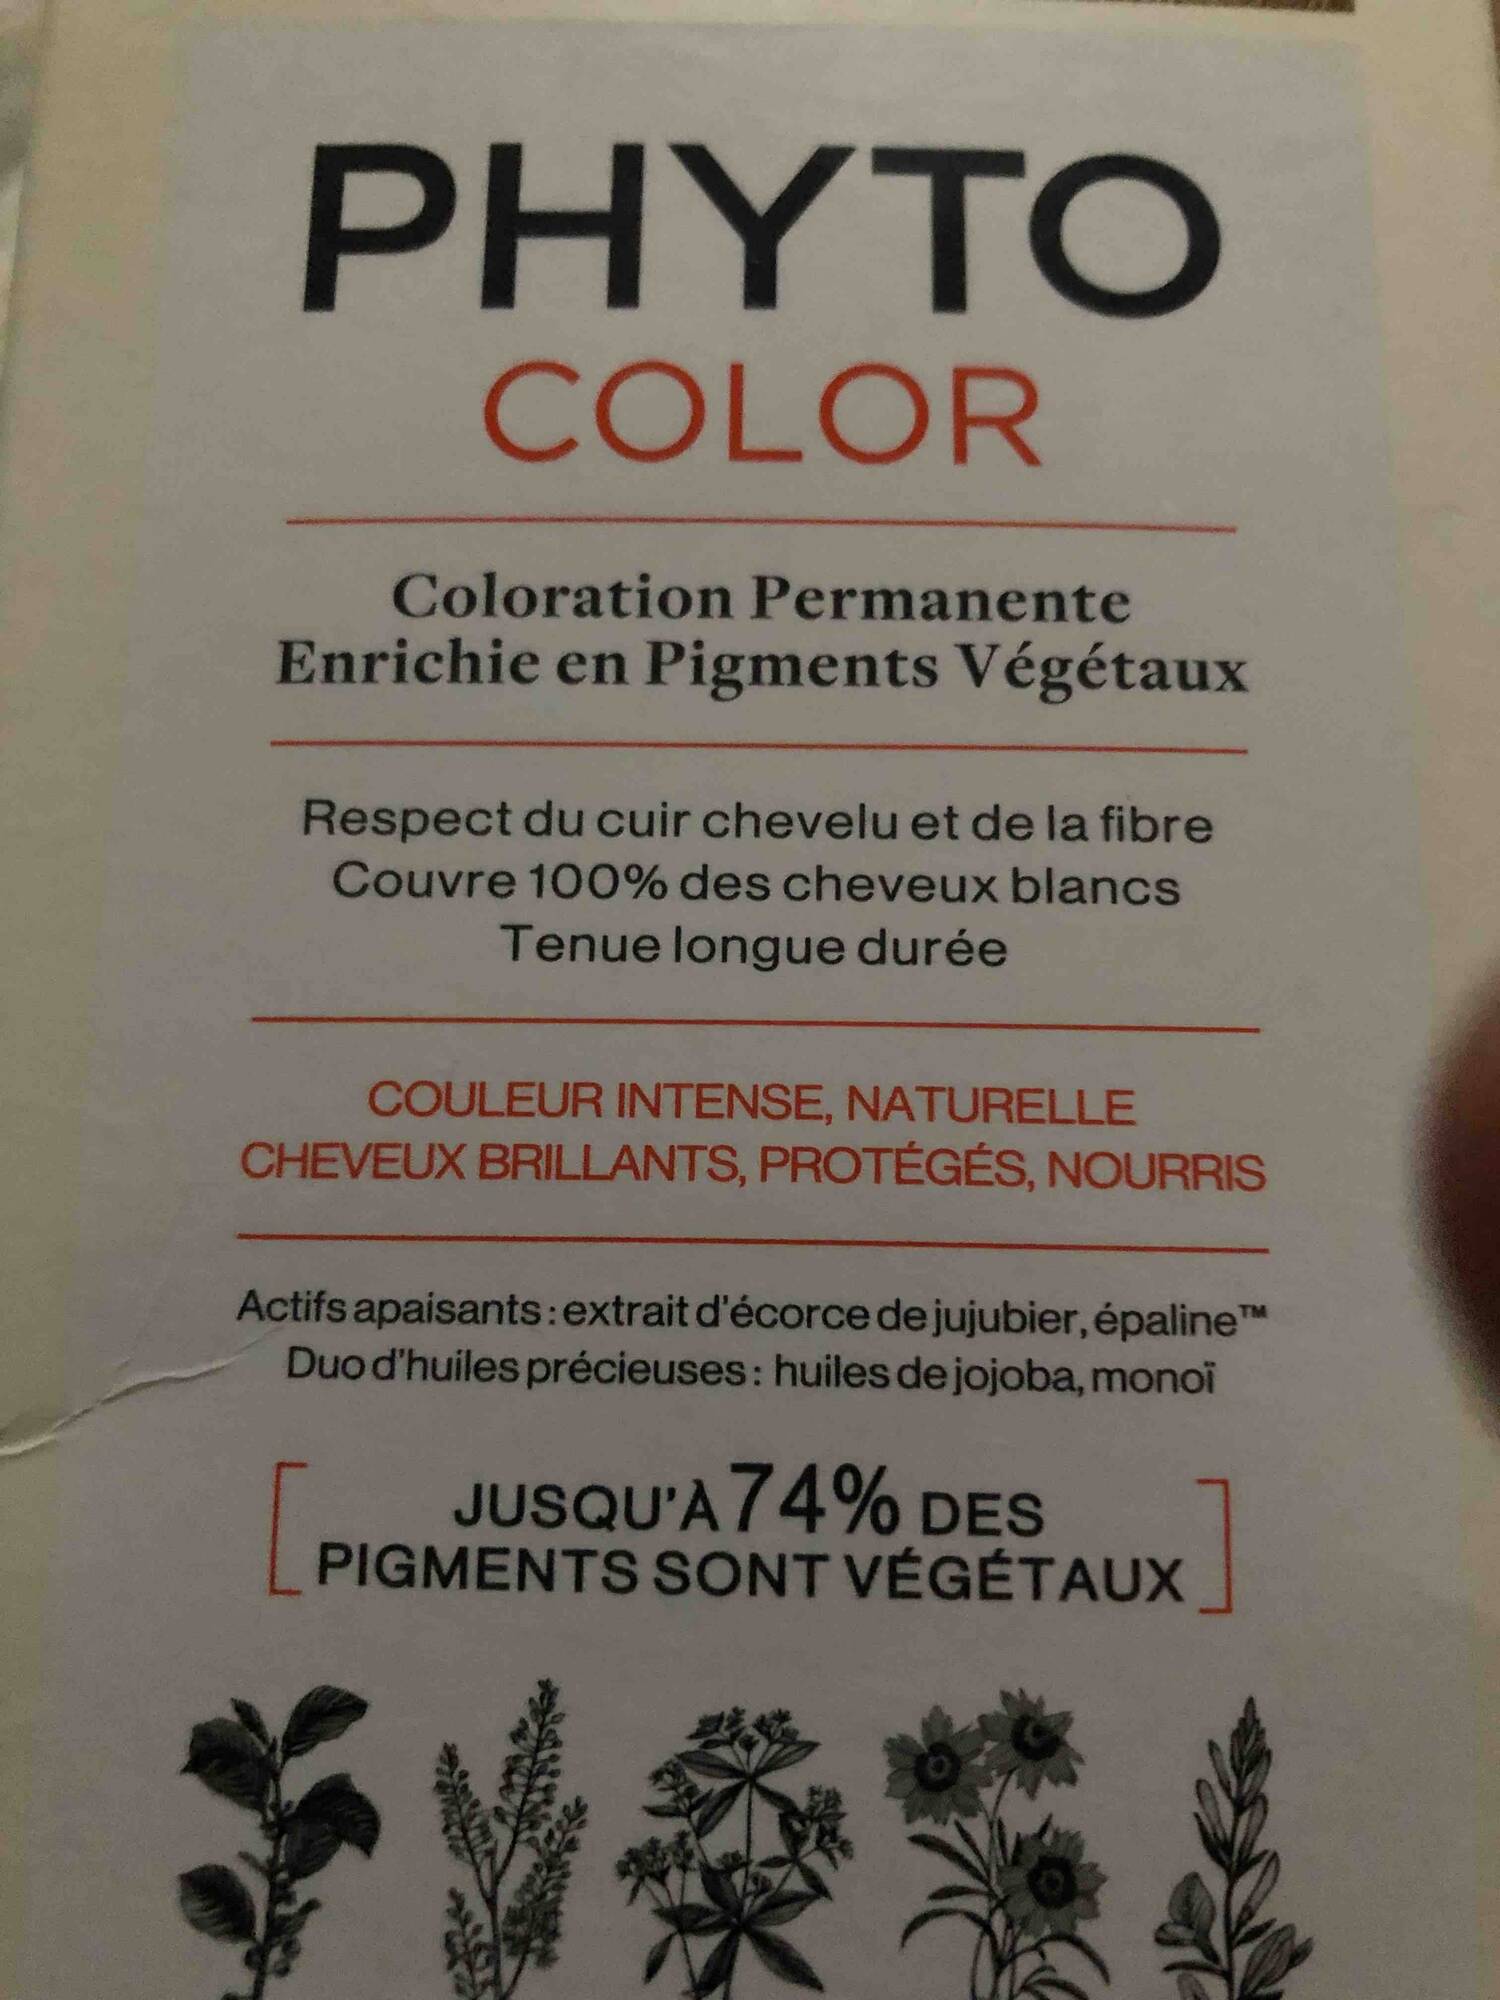 PHYTO - Coloration permanente enrichie en pigments végétaux